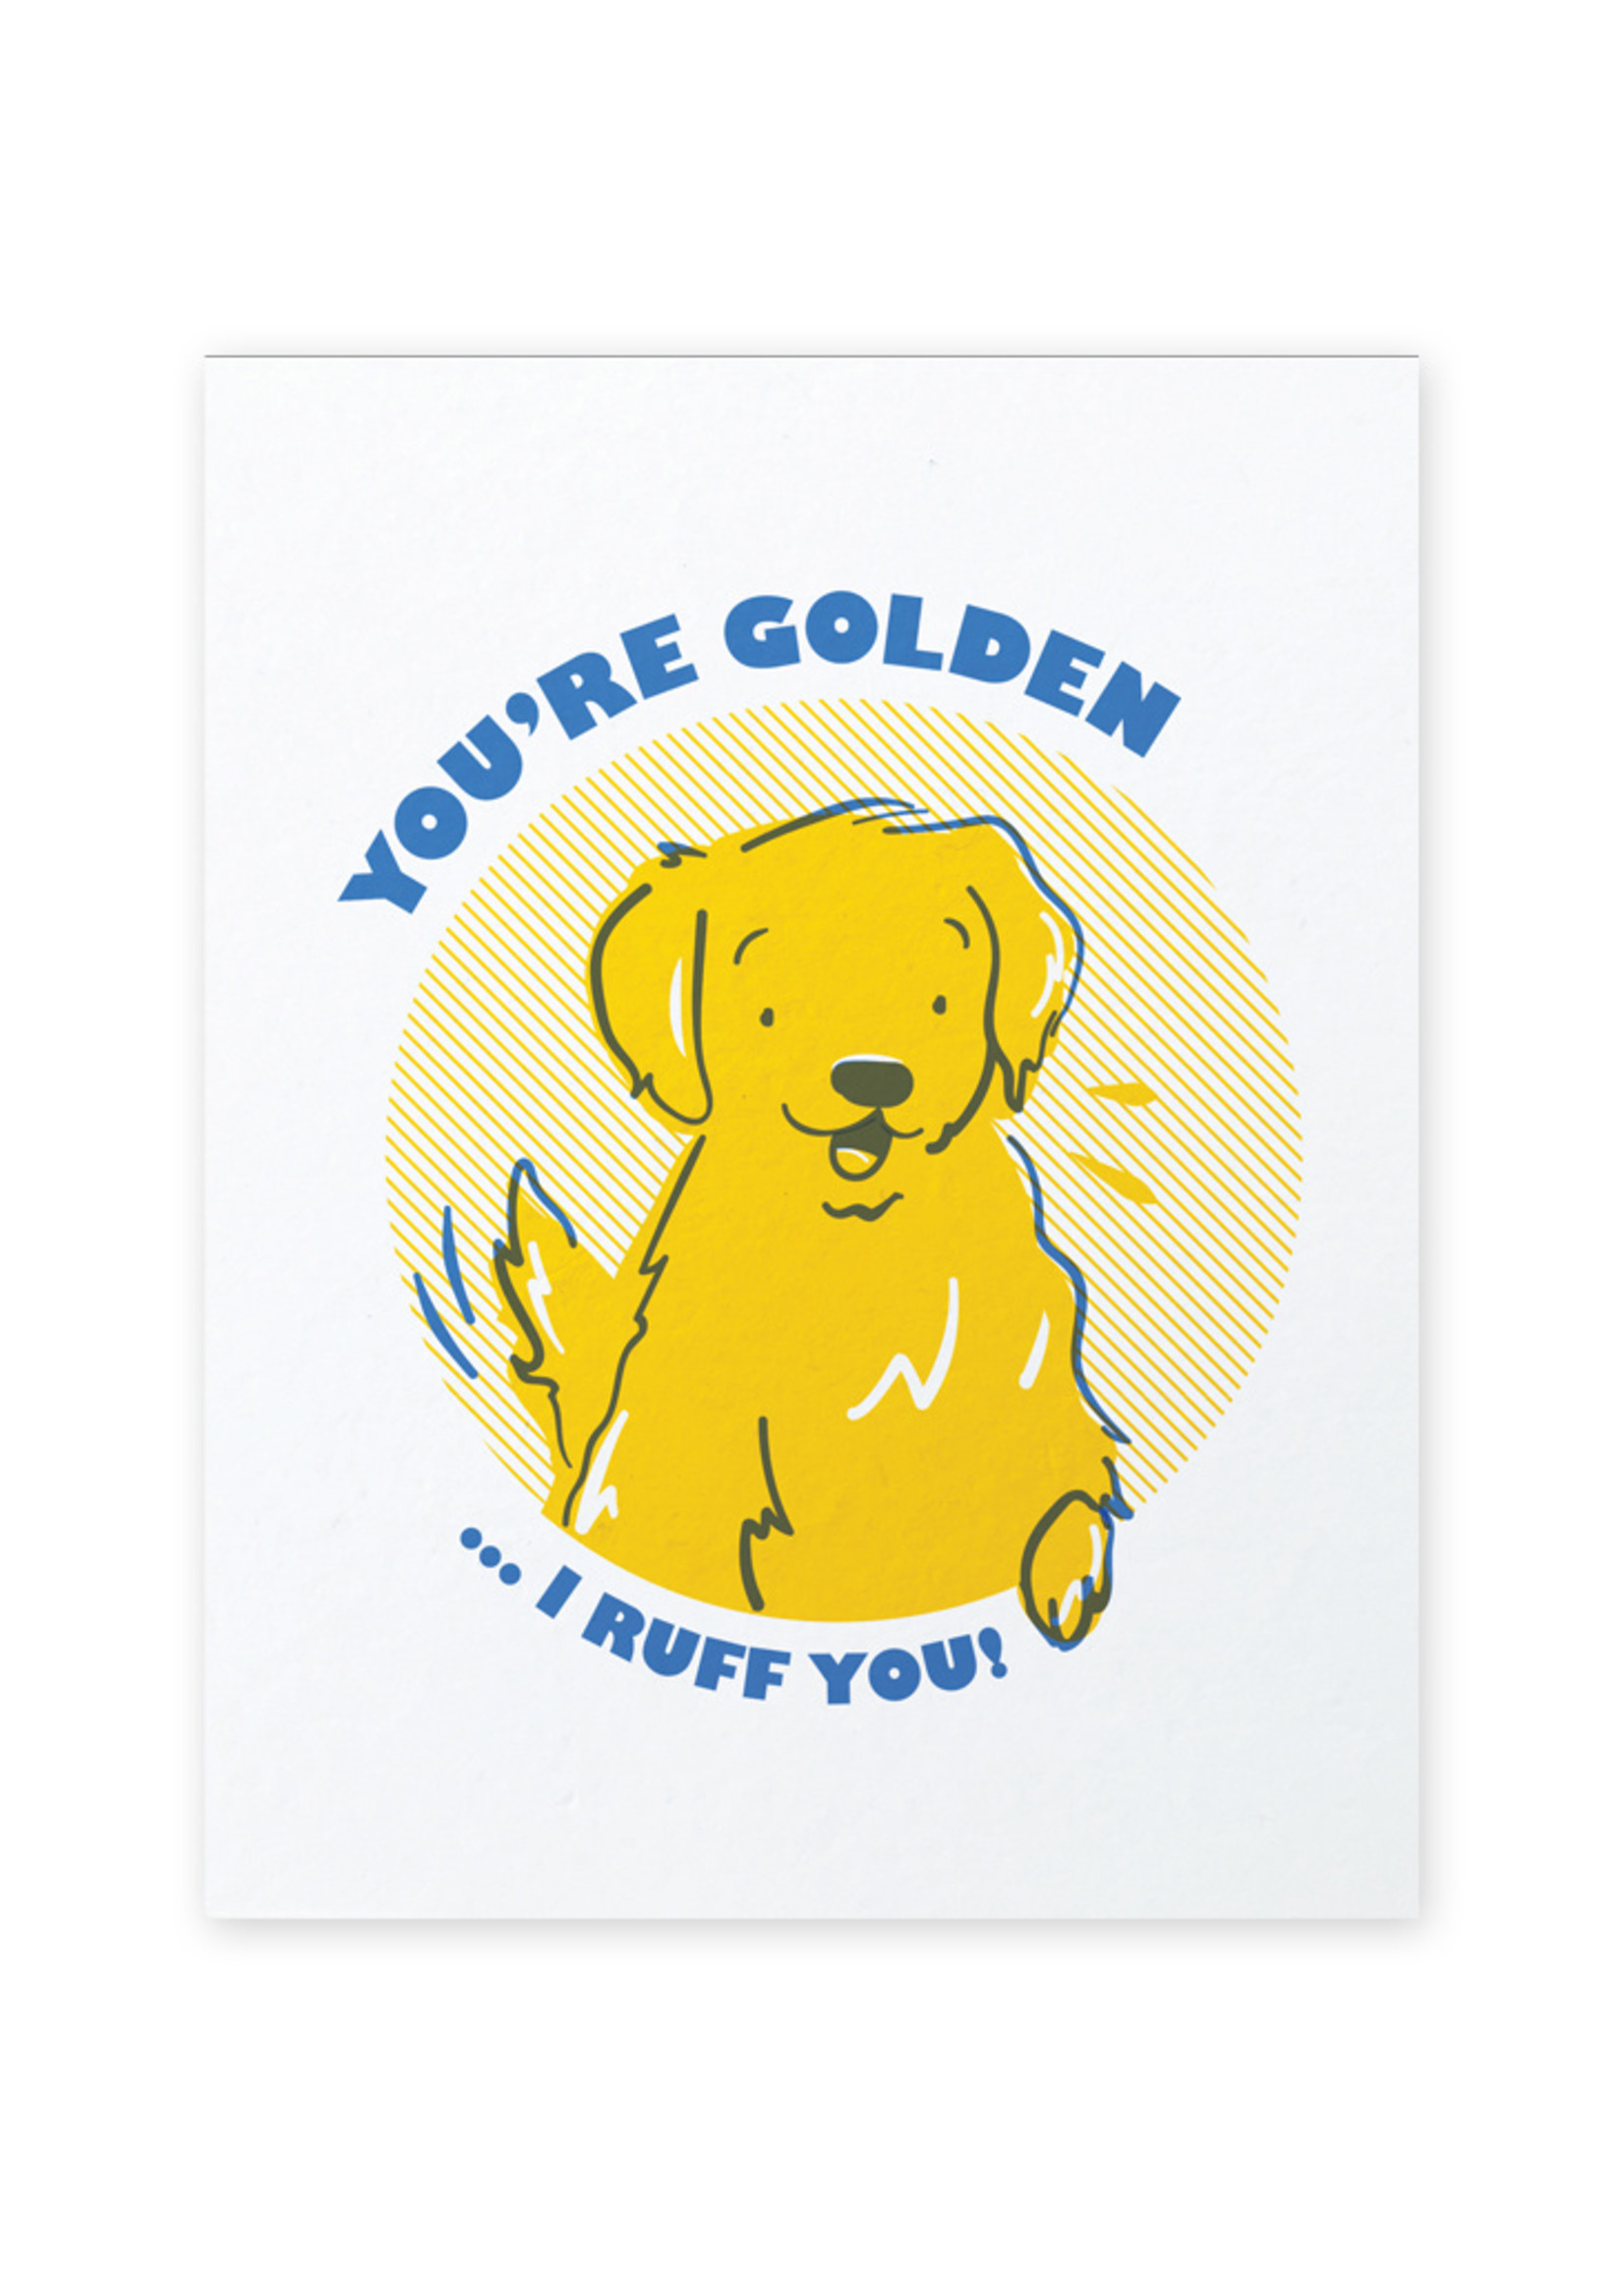 Good Paper Golden Retriever Love Card